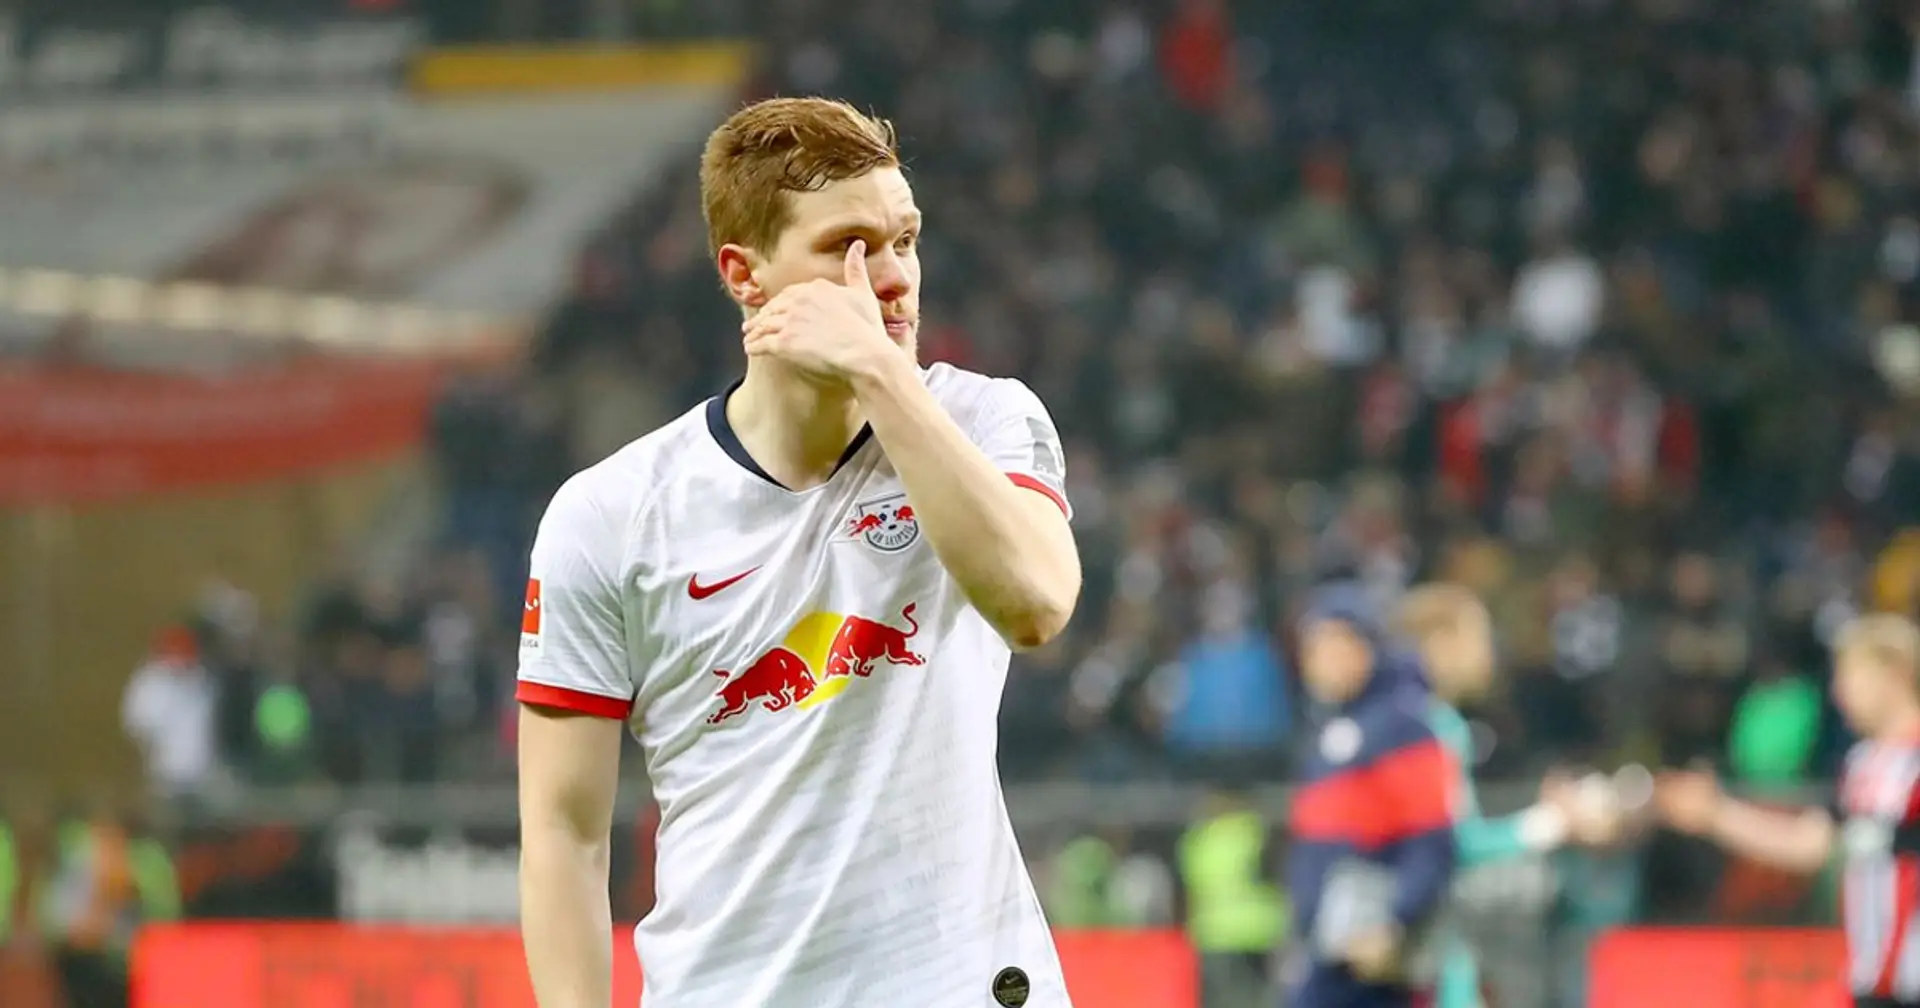 Le RB Leipzig perd un défenseur central, Halstenberg pour le match contre le PSG